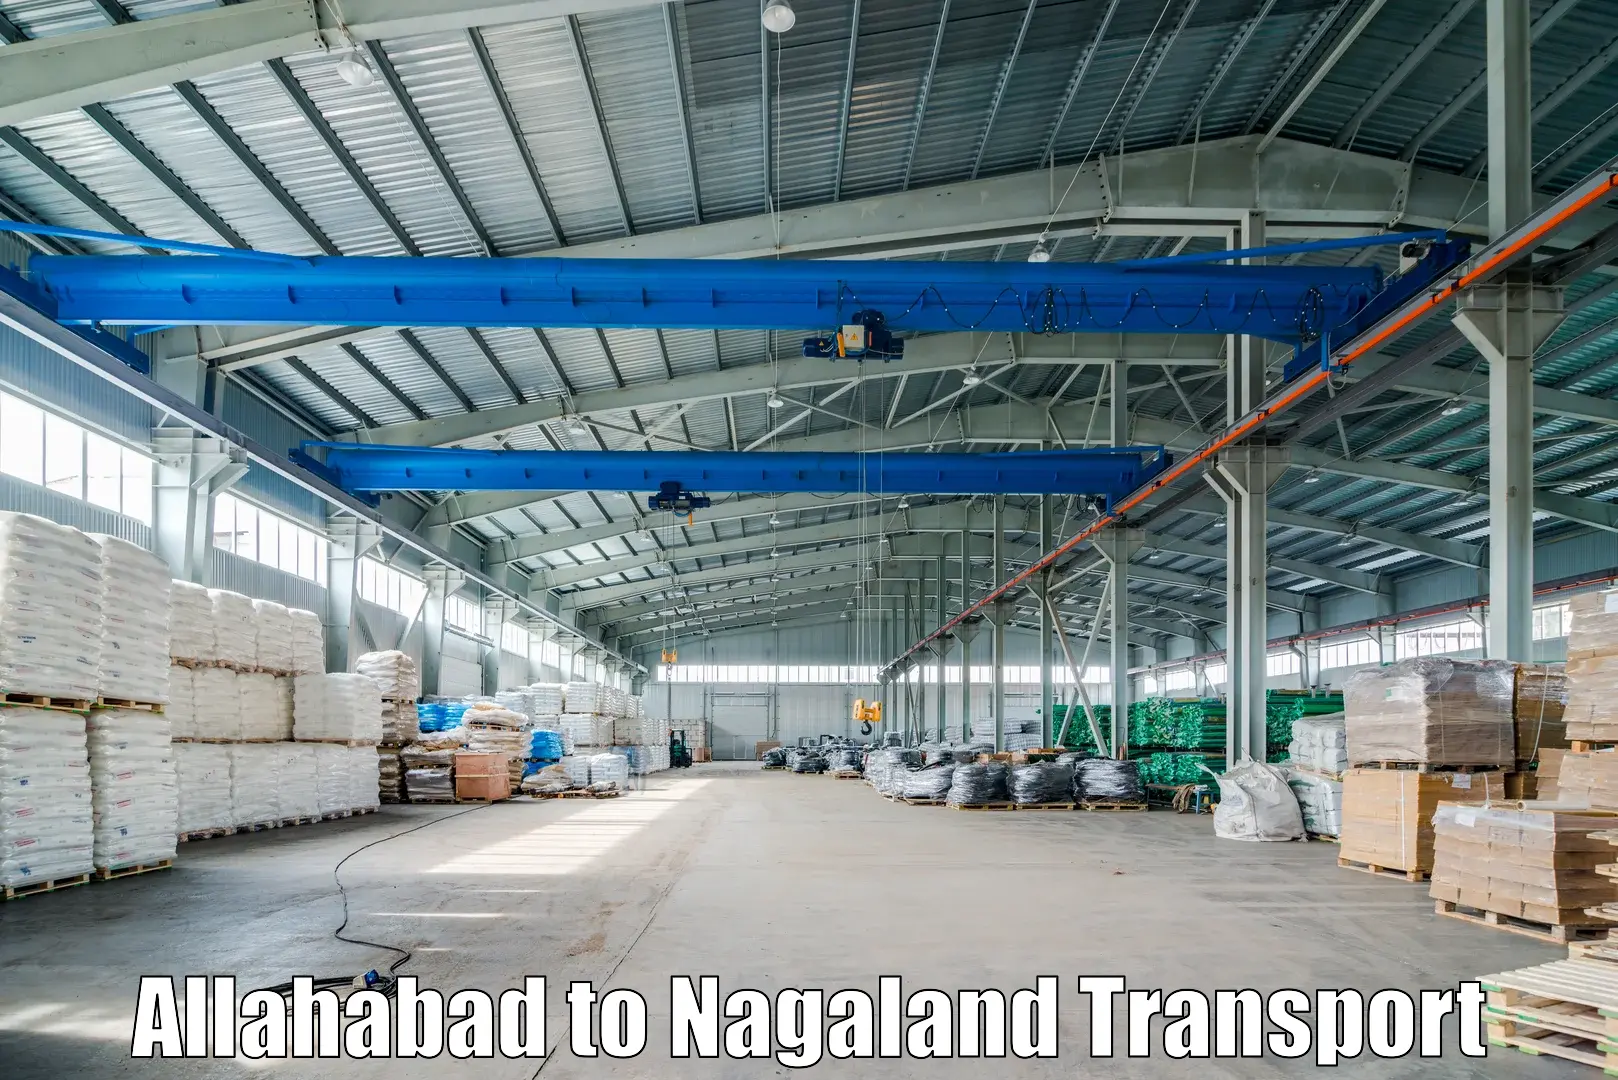 Bike shipping service Allahabad to Nagaland